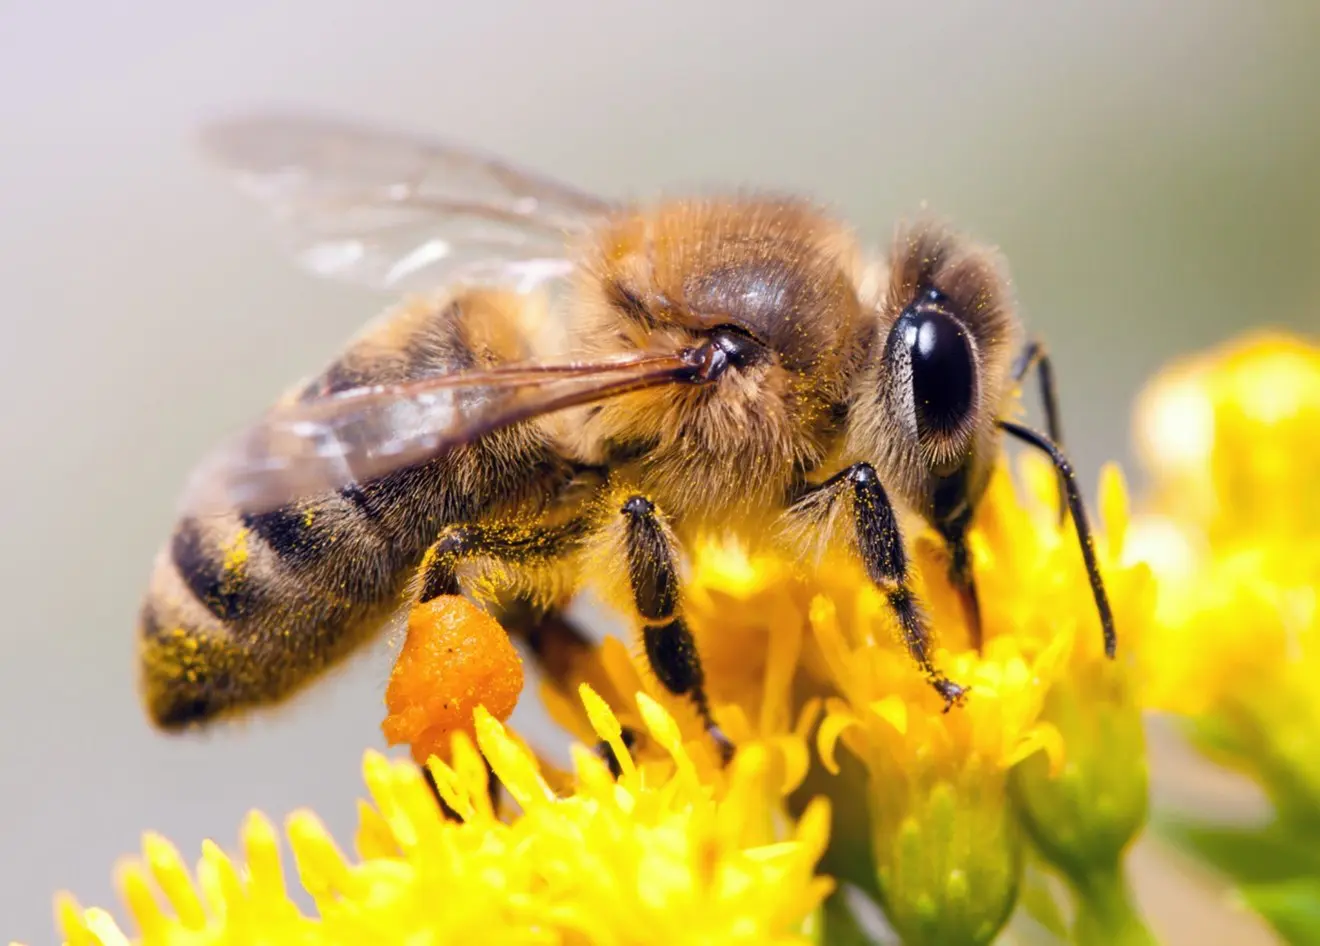 Abeilles Se Baladent Sur Le Nid D'abeille. Les Insectes Qui Travaillent  Dans La Ruche En Bois Ramassant Le Nectar Du Pollen De Fle Clips Vidéos -  Vidéo du apiculture, beeswax: 287929405